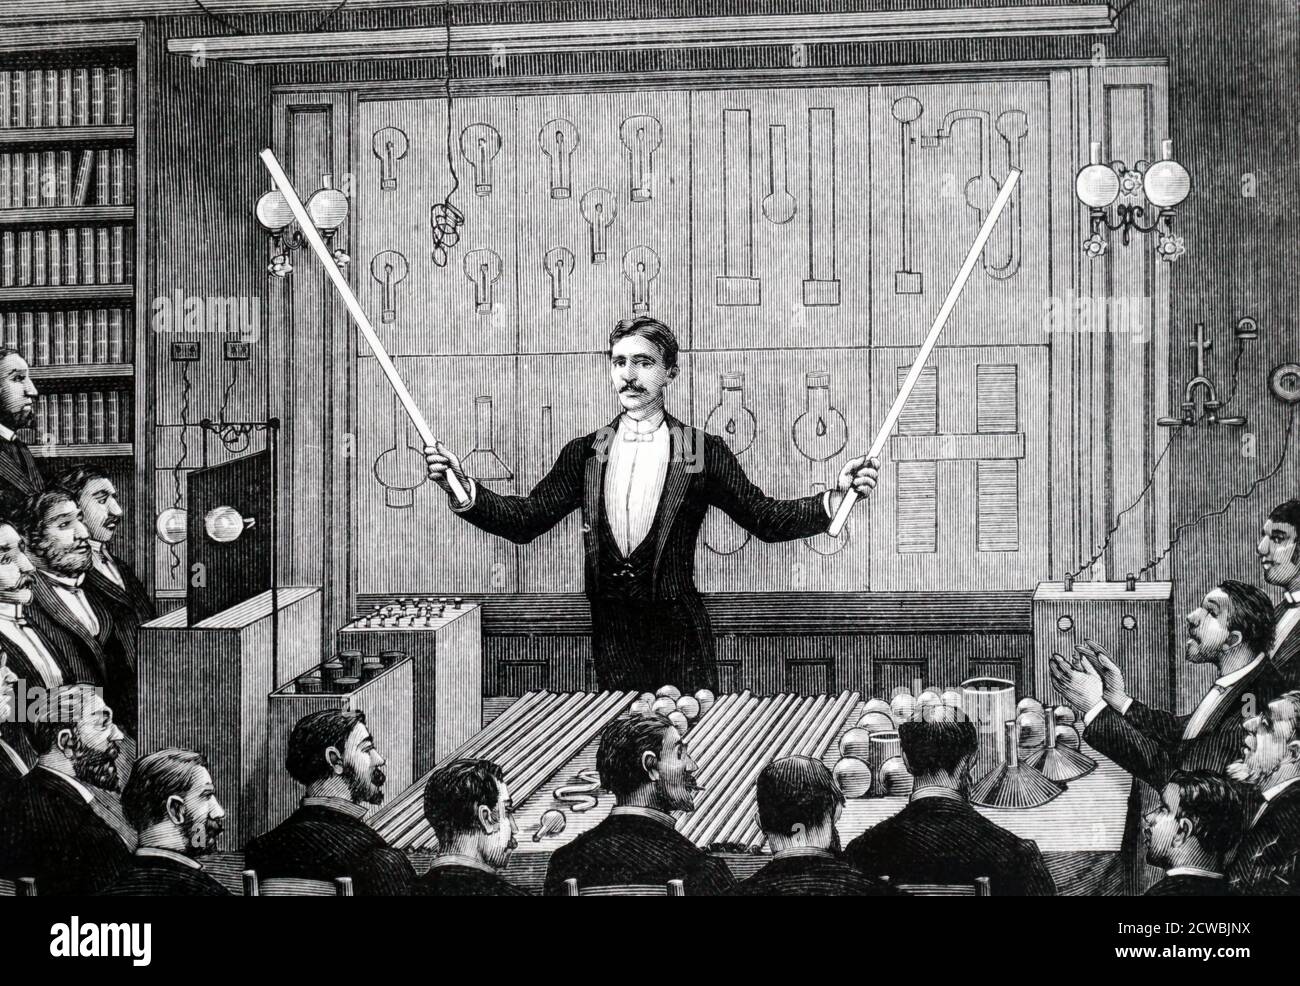 Gravur mit Nikola Tesla an die Societe Francaise de physique und die Internationale Gesellschaft der Elektriker, Paris. Er zeigt elektrodenlose Entladung mit leuchtenden Entladungsstäben - der Vorläufer der Leuchtstoffbeleuchtung. Stockfoto